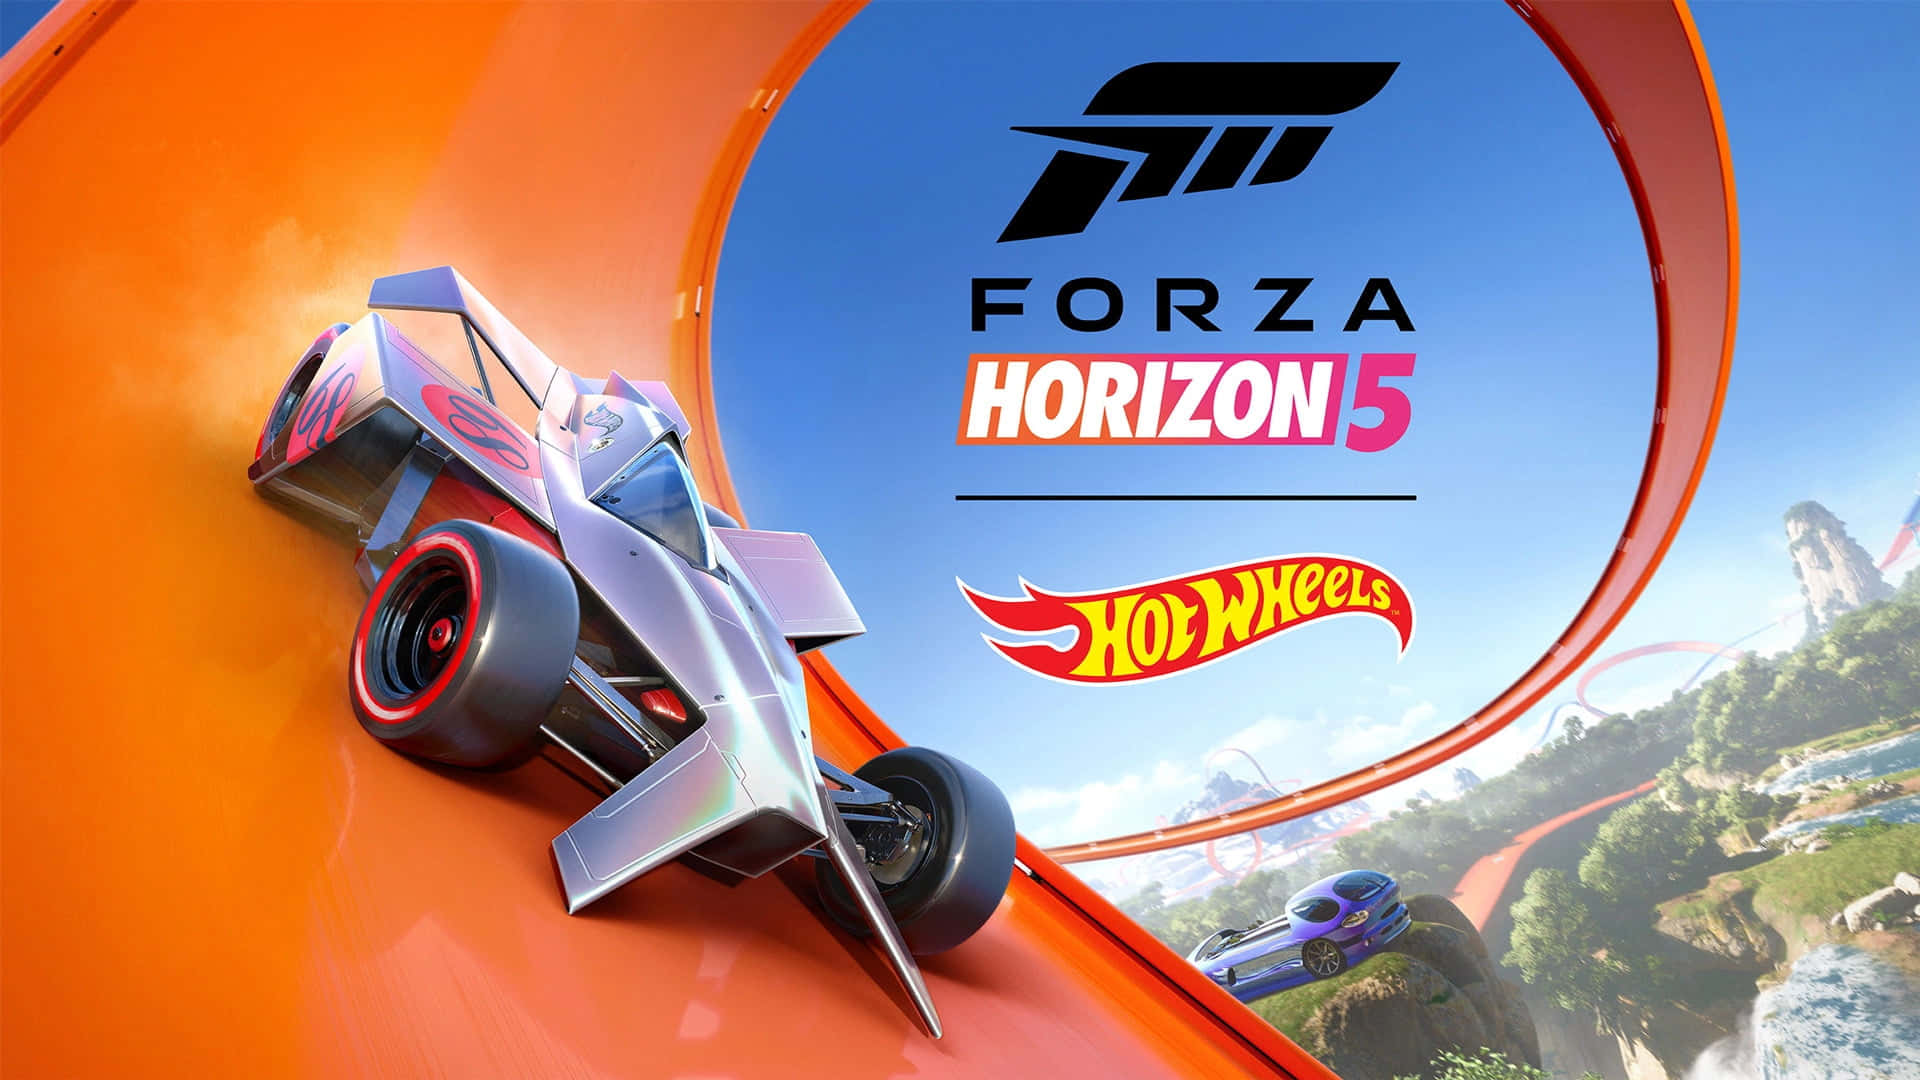 Forza Horizon 5 - Hot Wheels